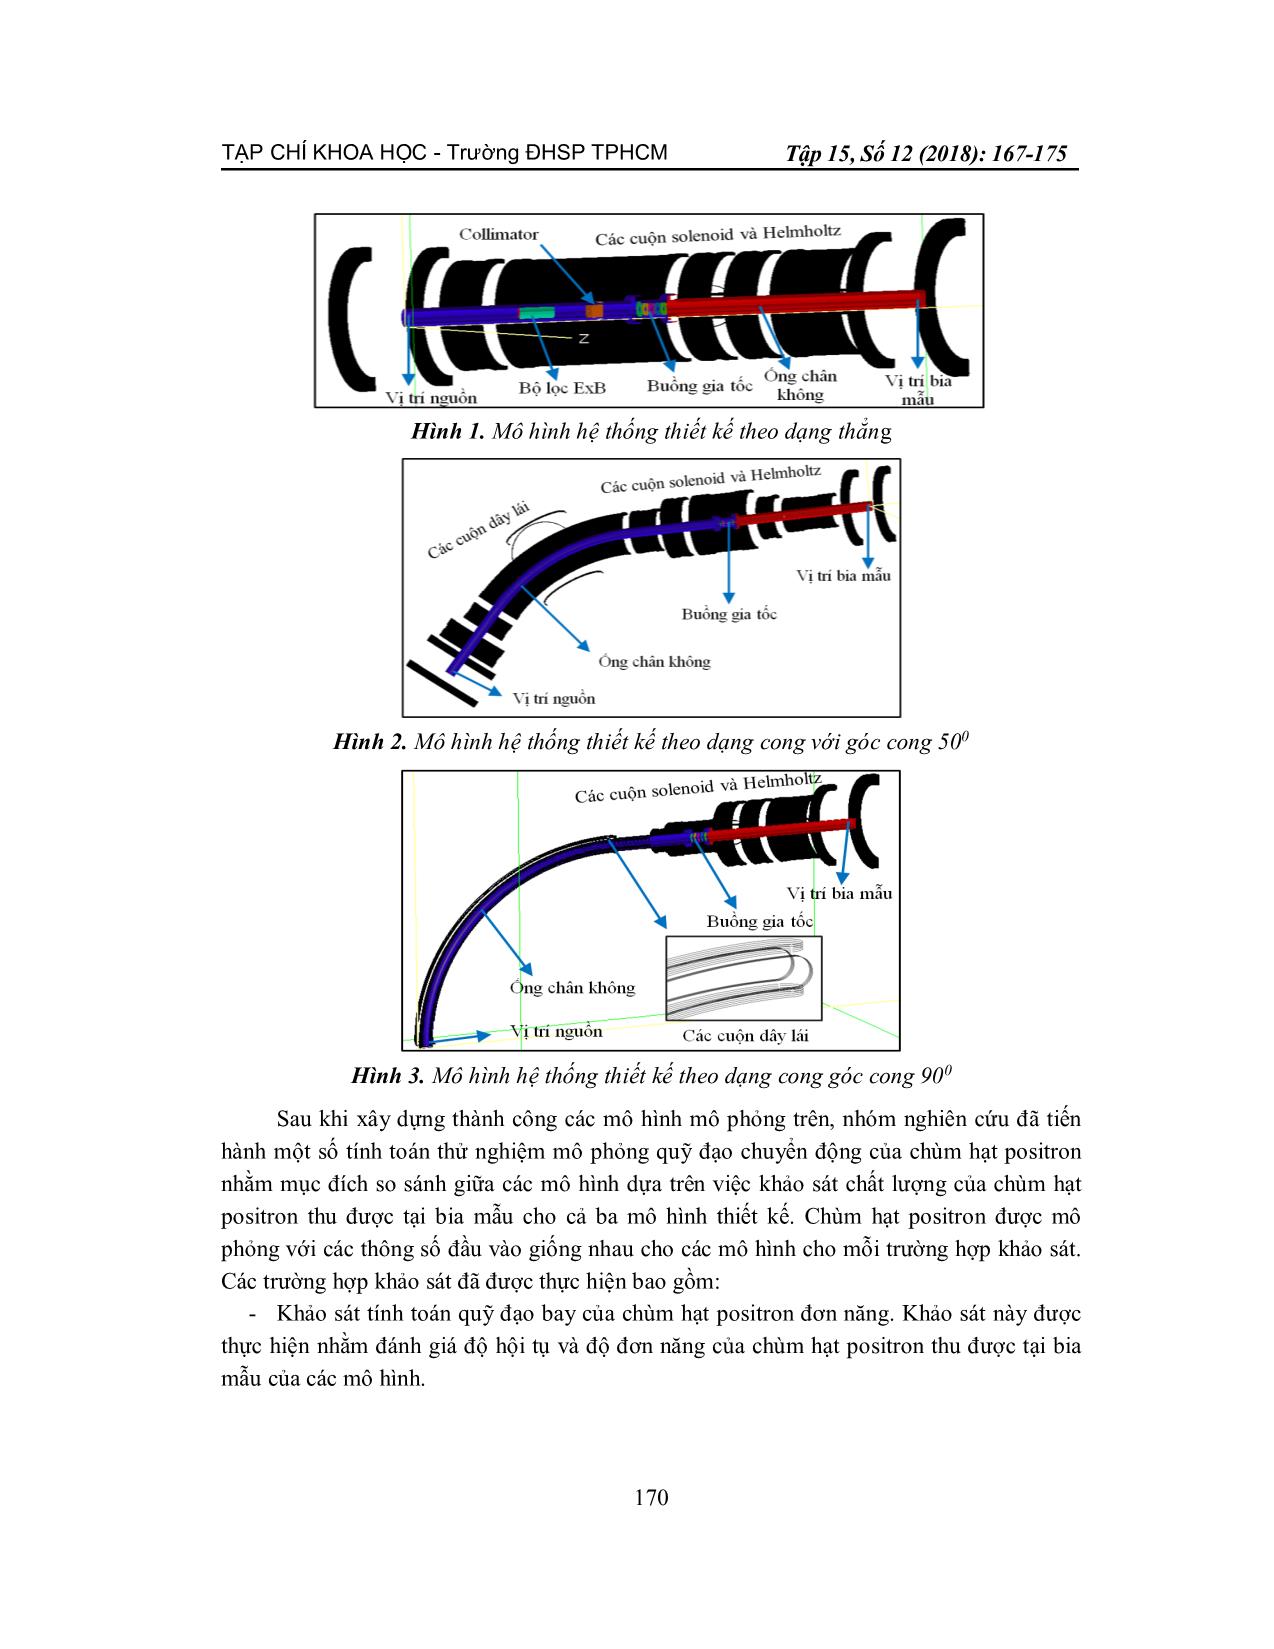 Thiết kế nguyên tắc hệ thống dẫn chùm Positron chậm bằng chương trình mô phỏng Simion trang 4